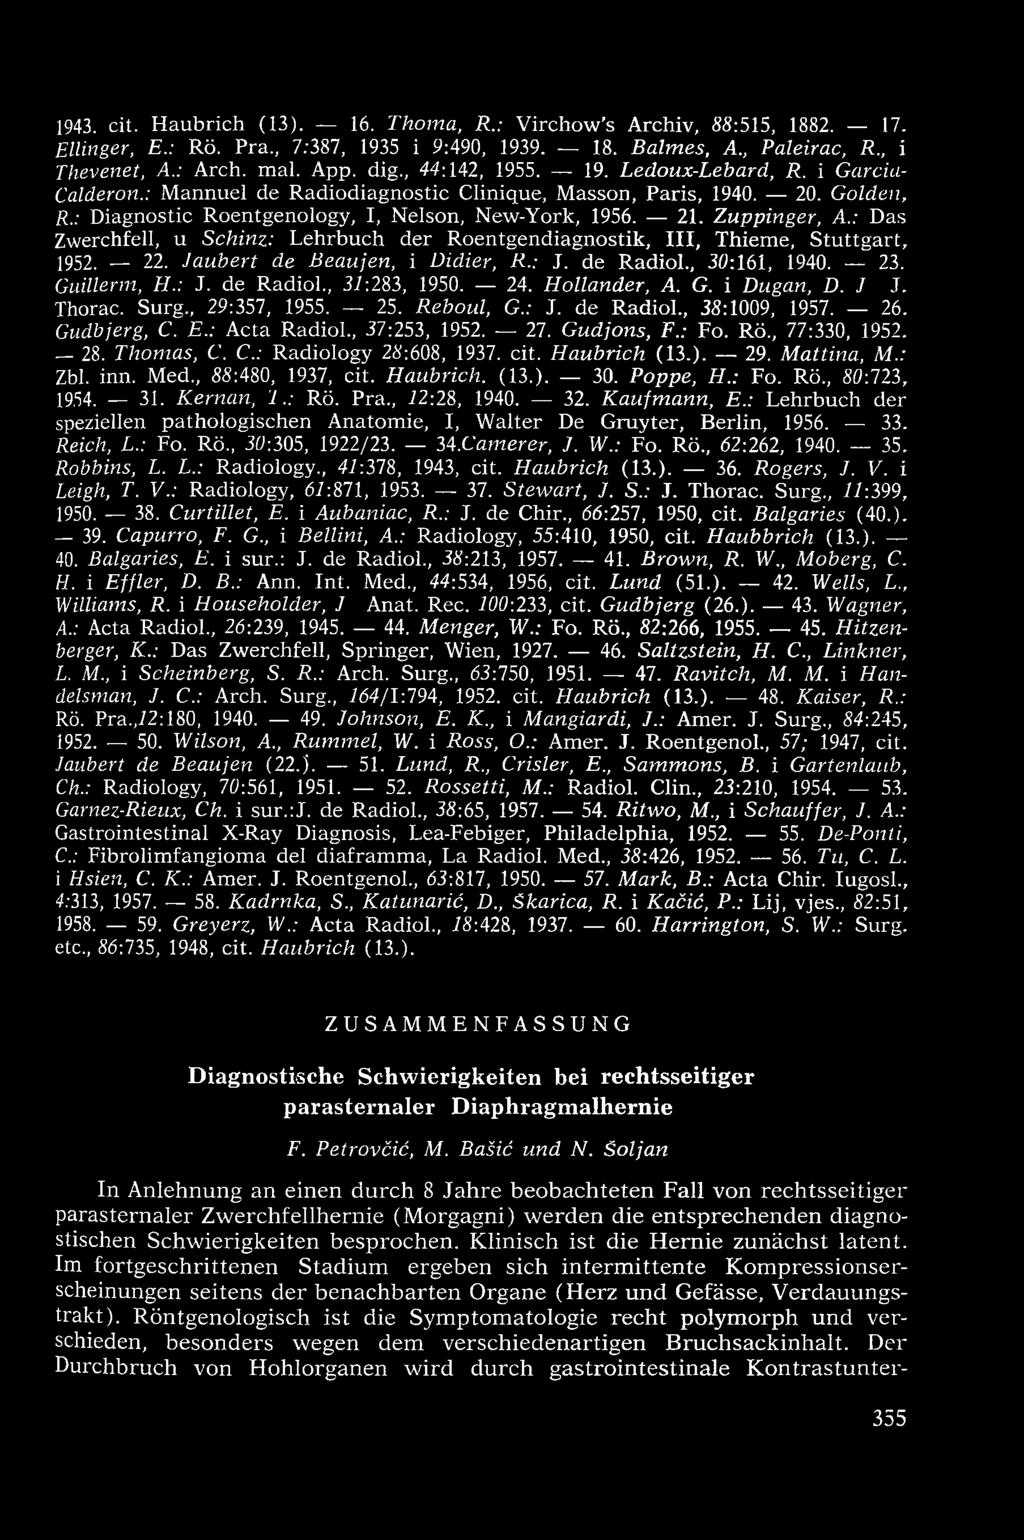 Zuppinger, A.: Das Zwerchfell, u Schinz: Lehrbuch der Roentgendiagnostik, III, Thieme, Stuttgart, 1952. 22. Jaubert de Beaujen, i Didier, R.: J. de Radiol., 30:161, 1940. 23. Guillerm, H.: J. de Radiol., 37:283, 1950.